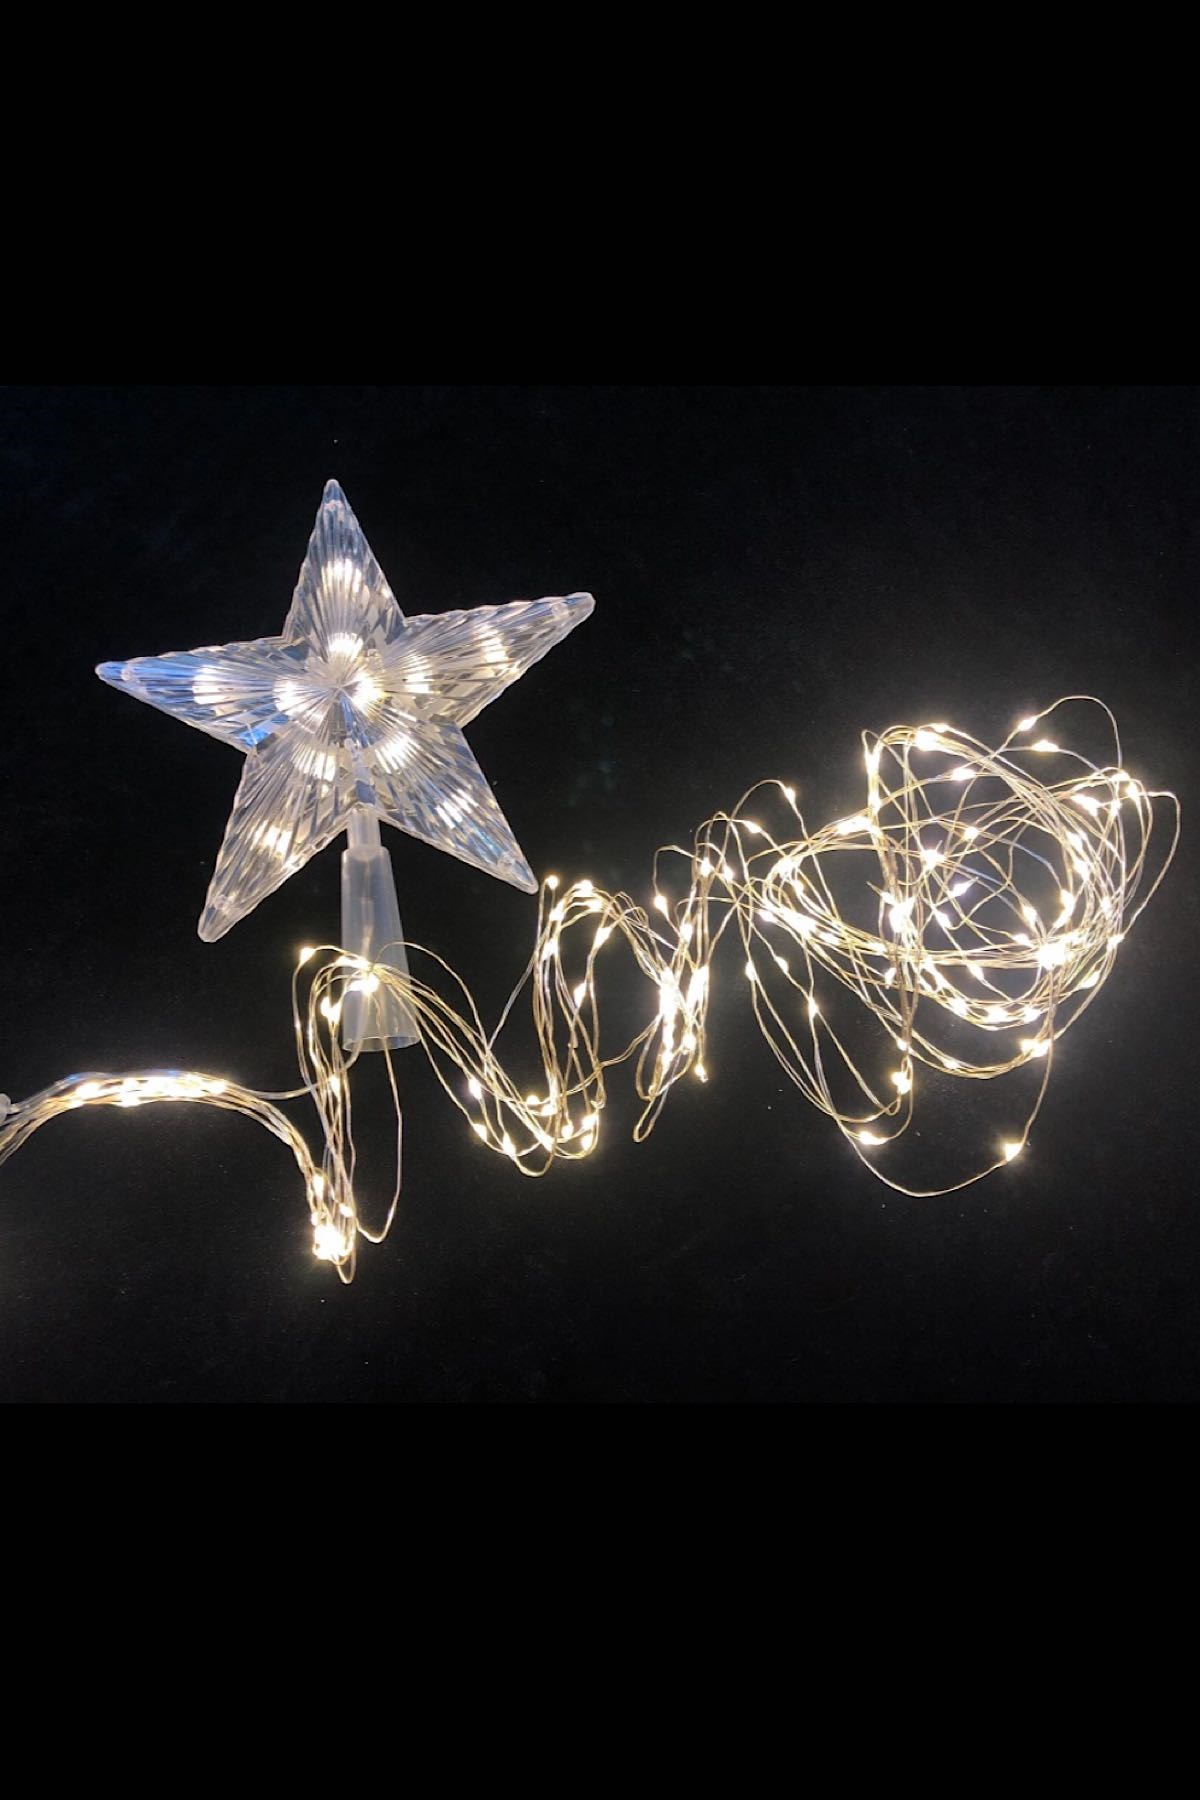 Kumandalı Yılbaşı Ağaç Süsleme Led Işık Ve Tepe Yıldızı Seti Yılbaşı Süsleri Ağaç Süsleme Seti - Thumbnail